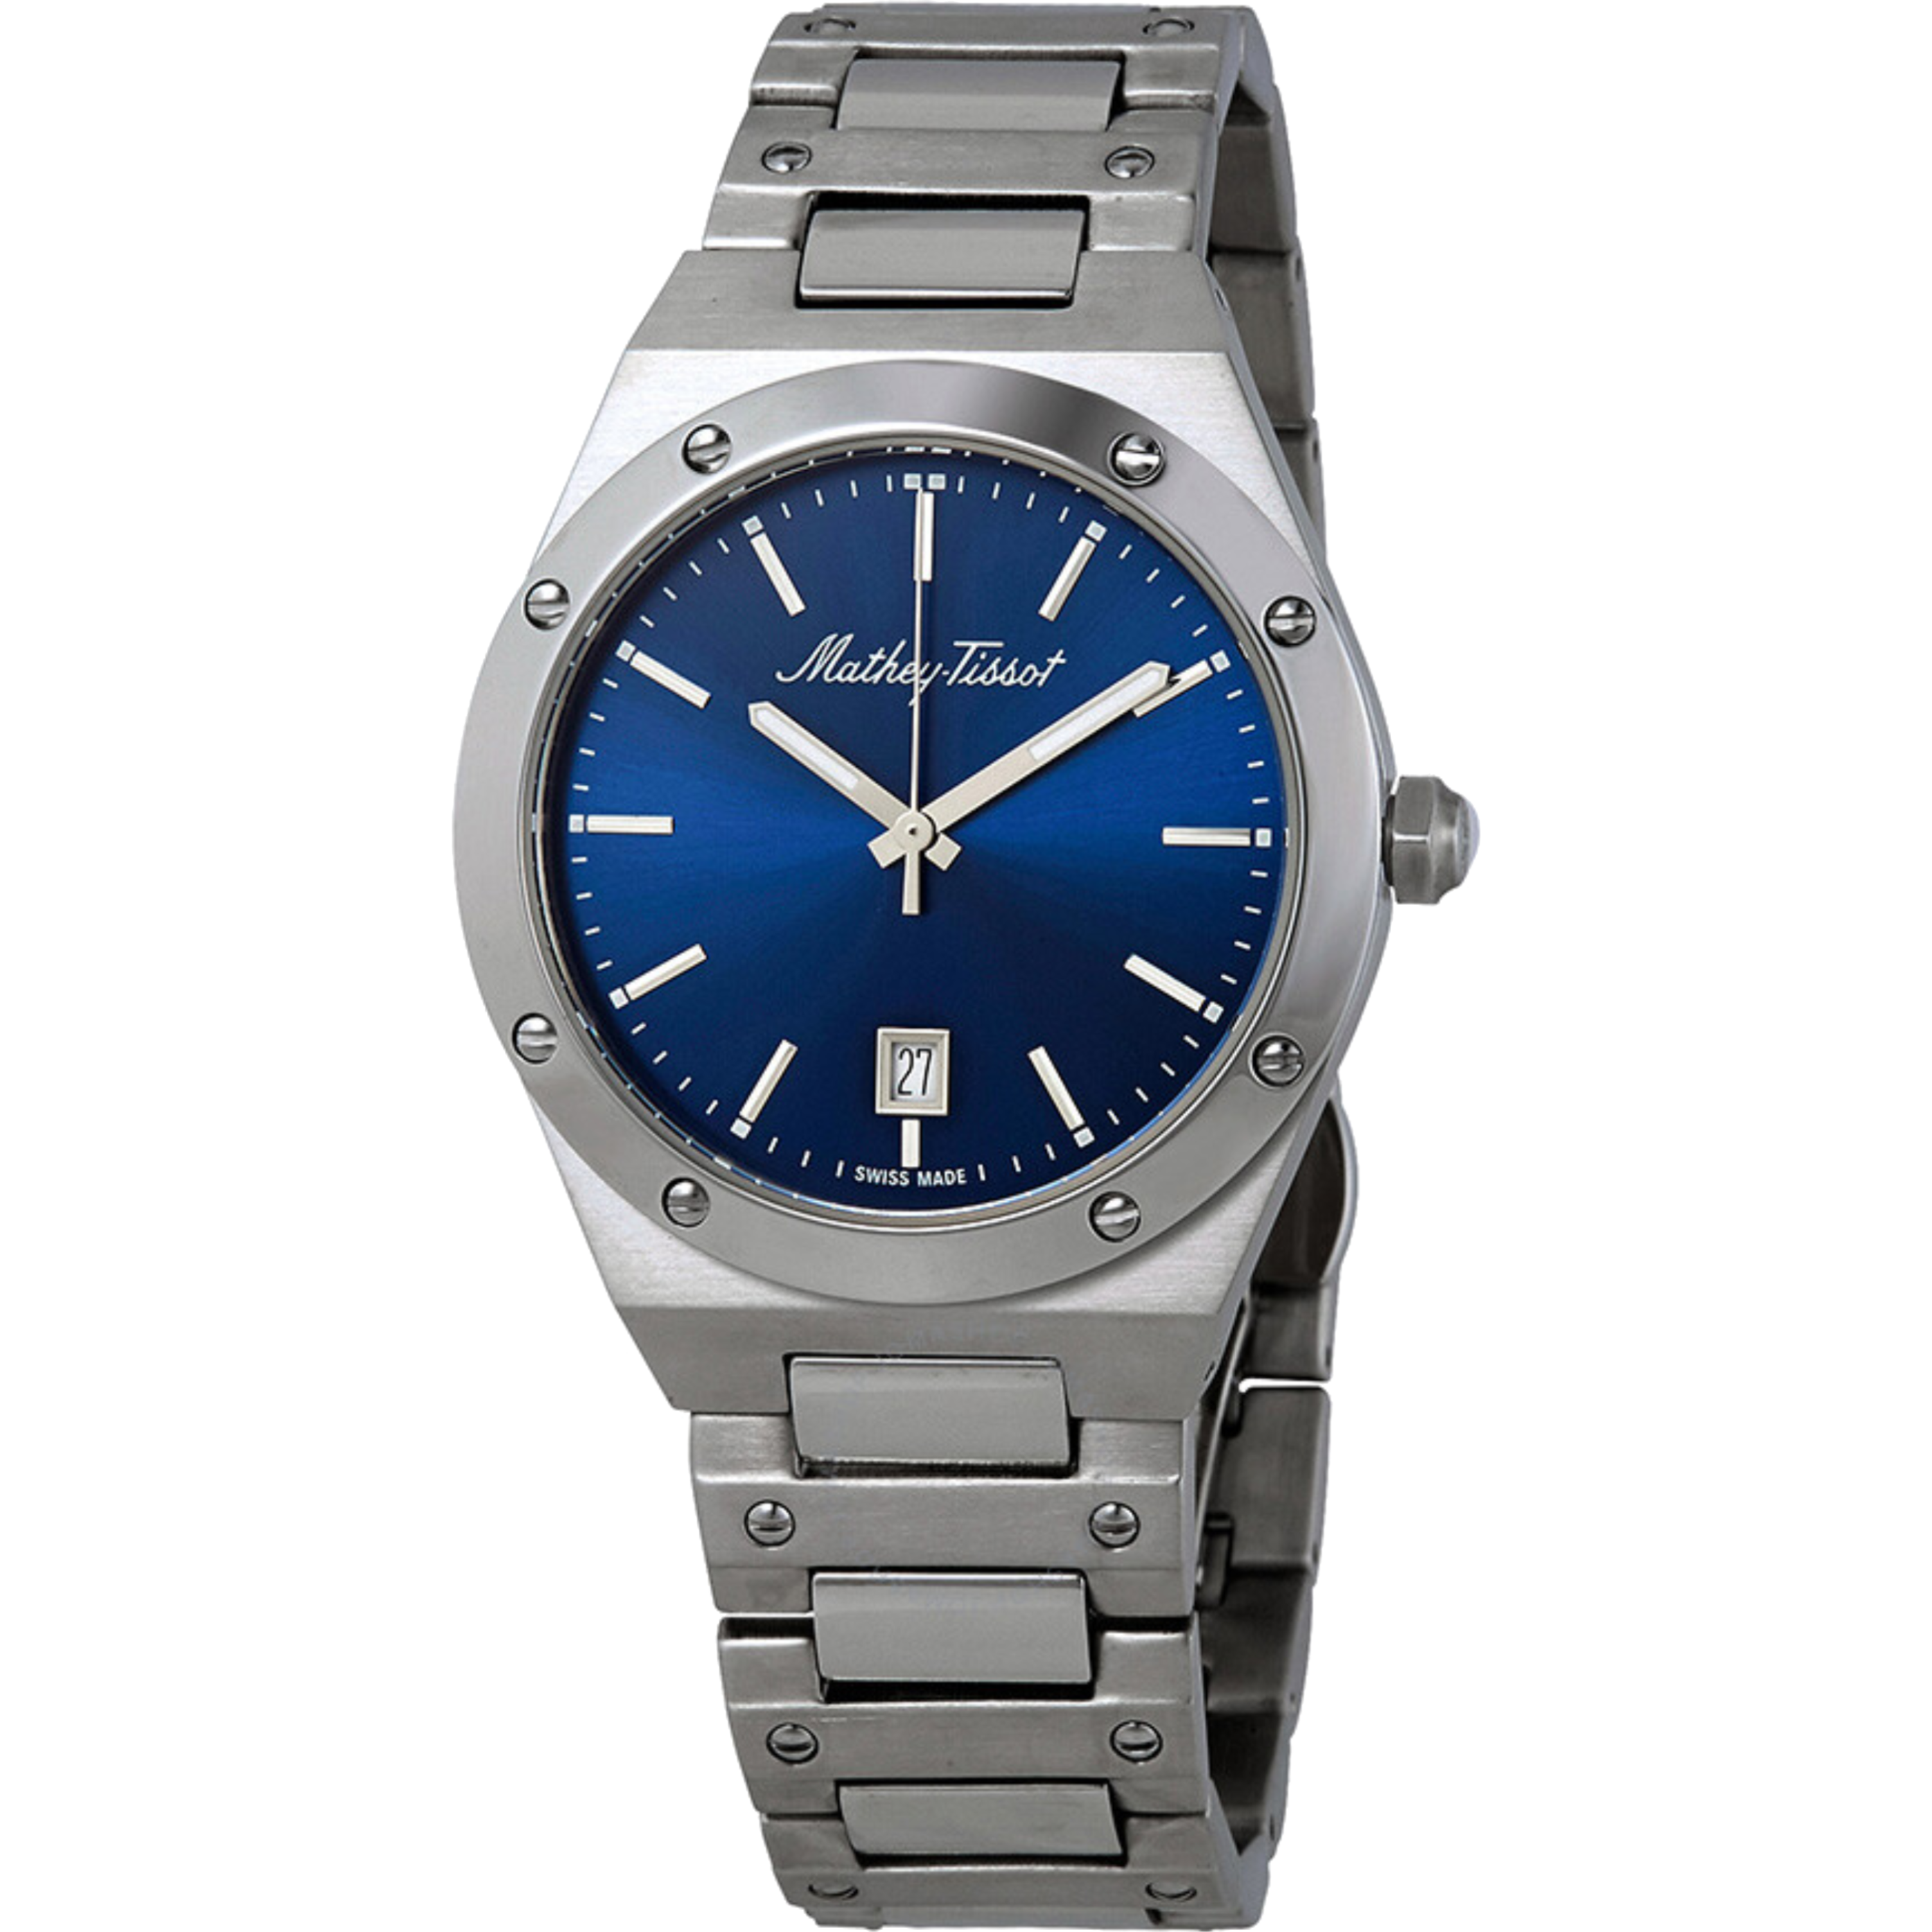 שעון יד לגבר Mathey Tissot H680ABU 41mm צבע כסף/כחול/זכוכית ספיר - אחריות לשנה ע"י היבואן